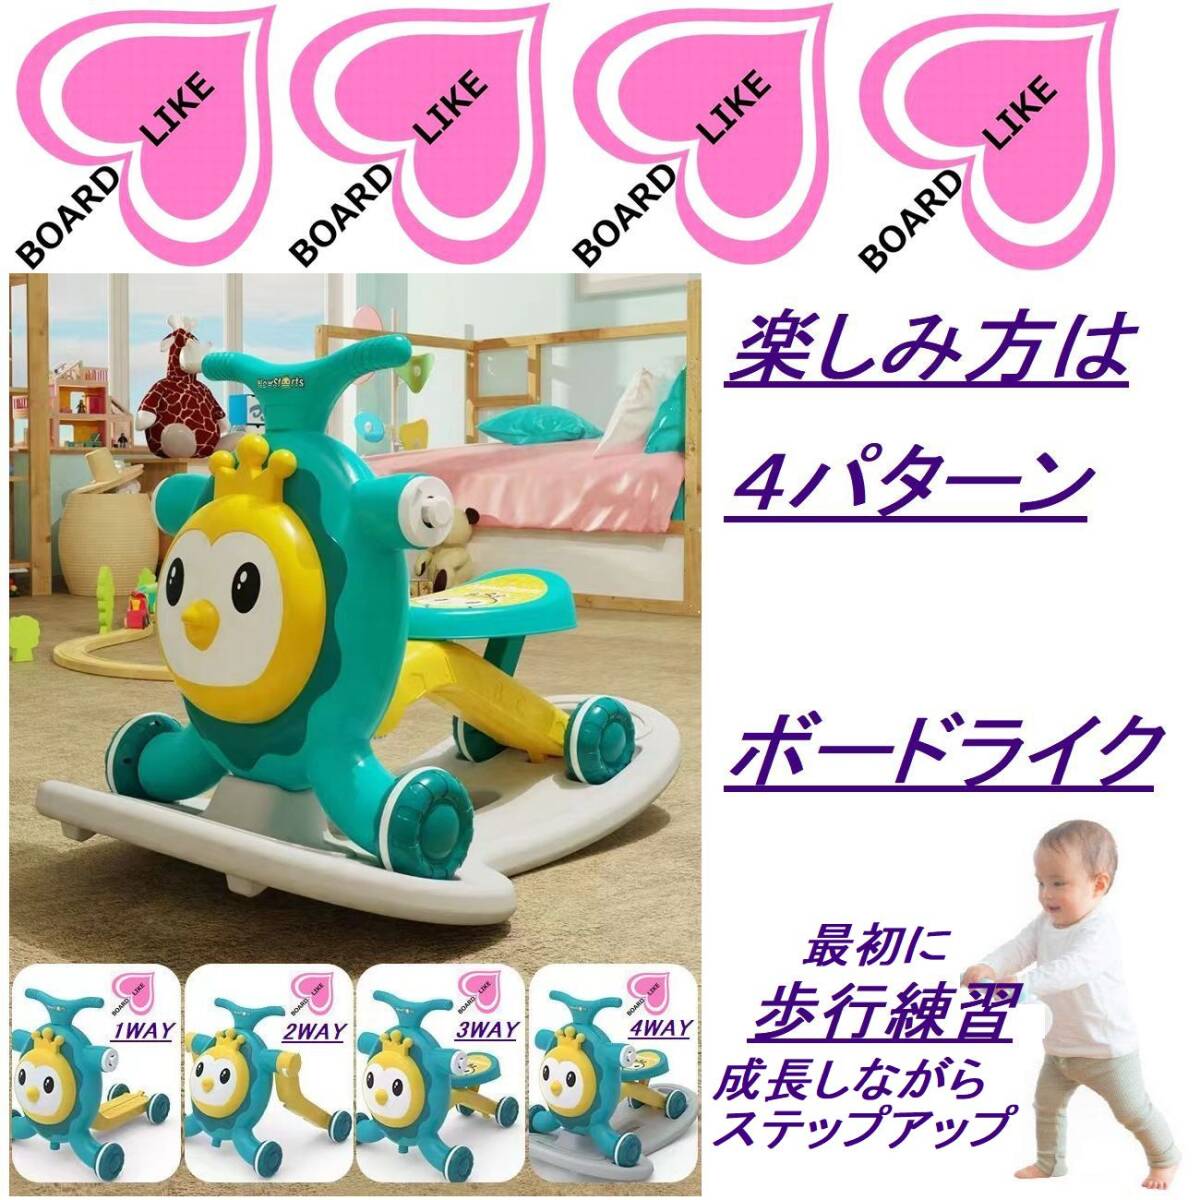  зеленый #80% off . быстрое решение,4WAY# первый в Японии #10 шт. ограничение # ходунки # baby War машина # панель Like # самокат # кресло-качалка -# деревянная лошадь 